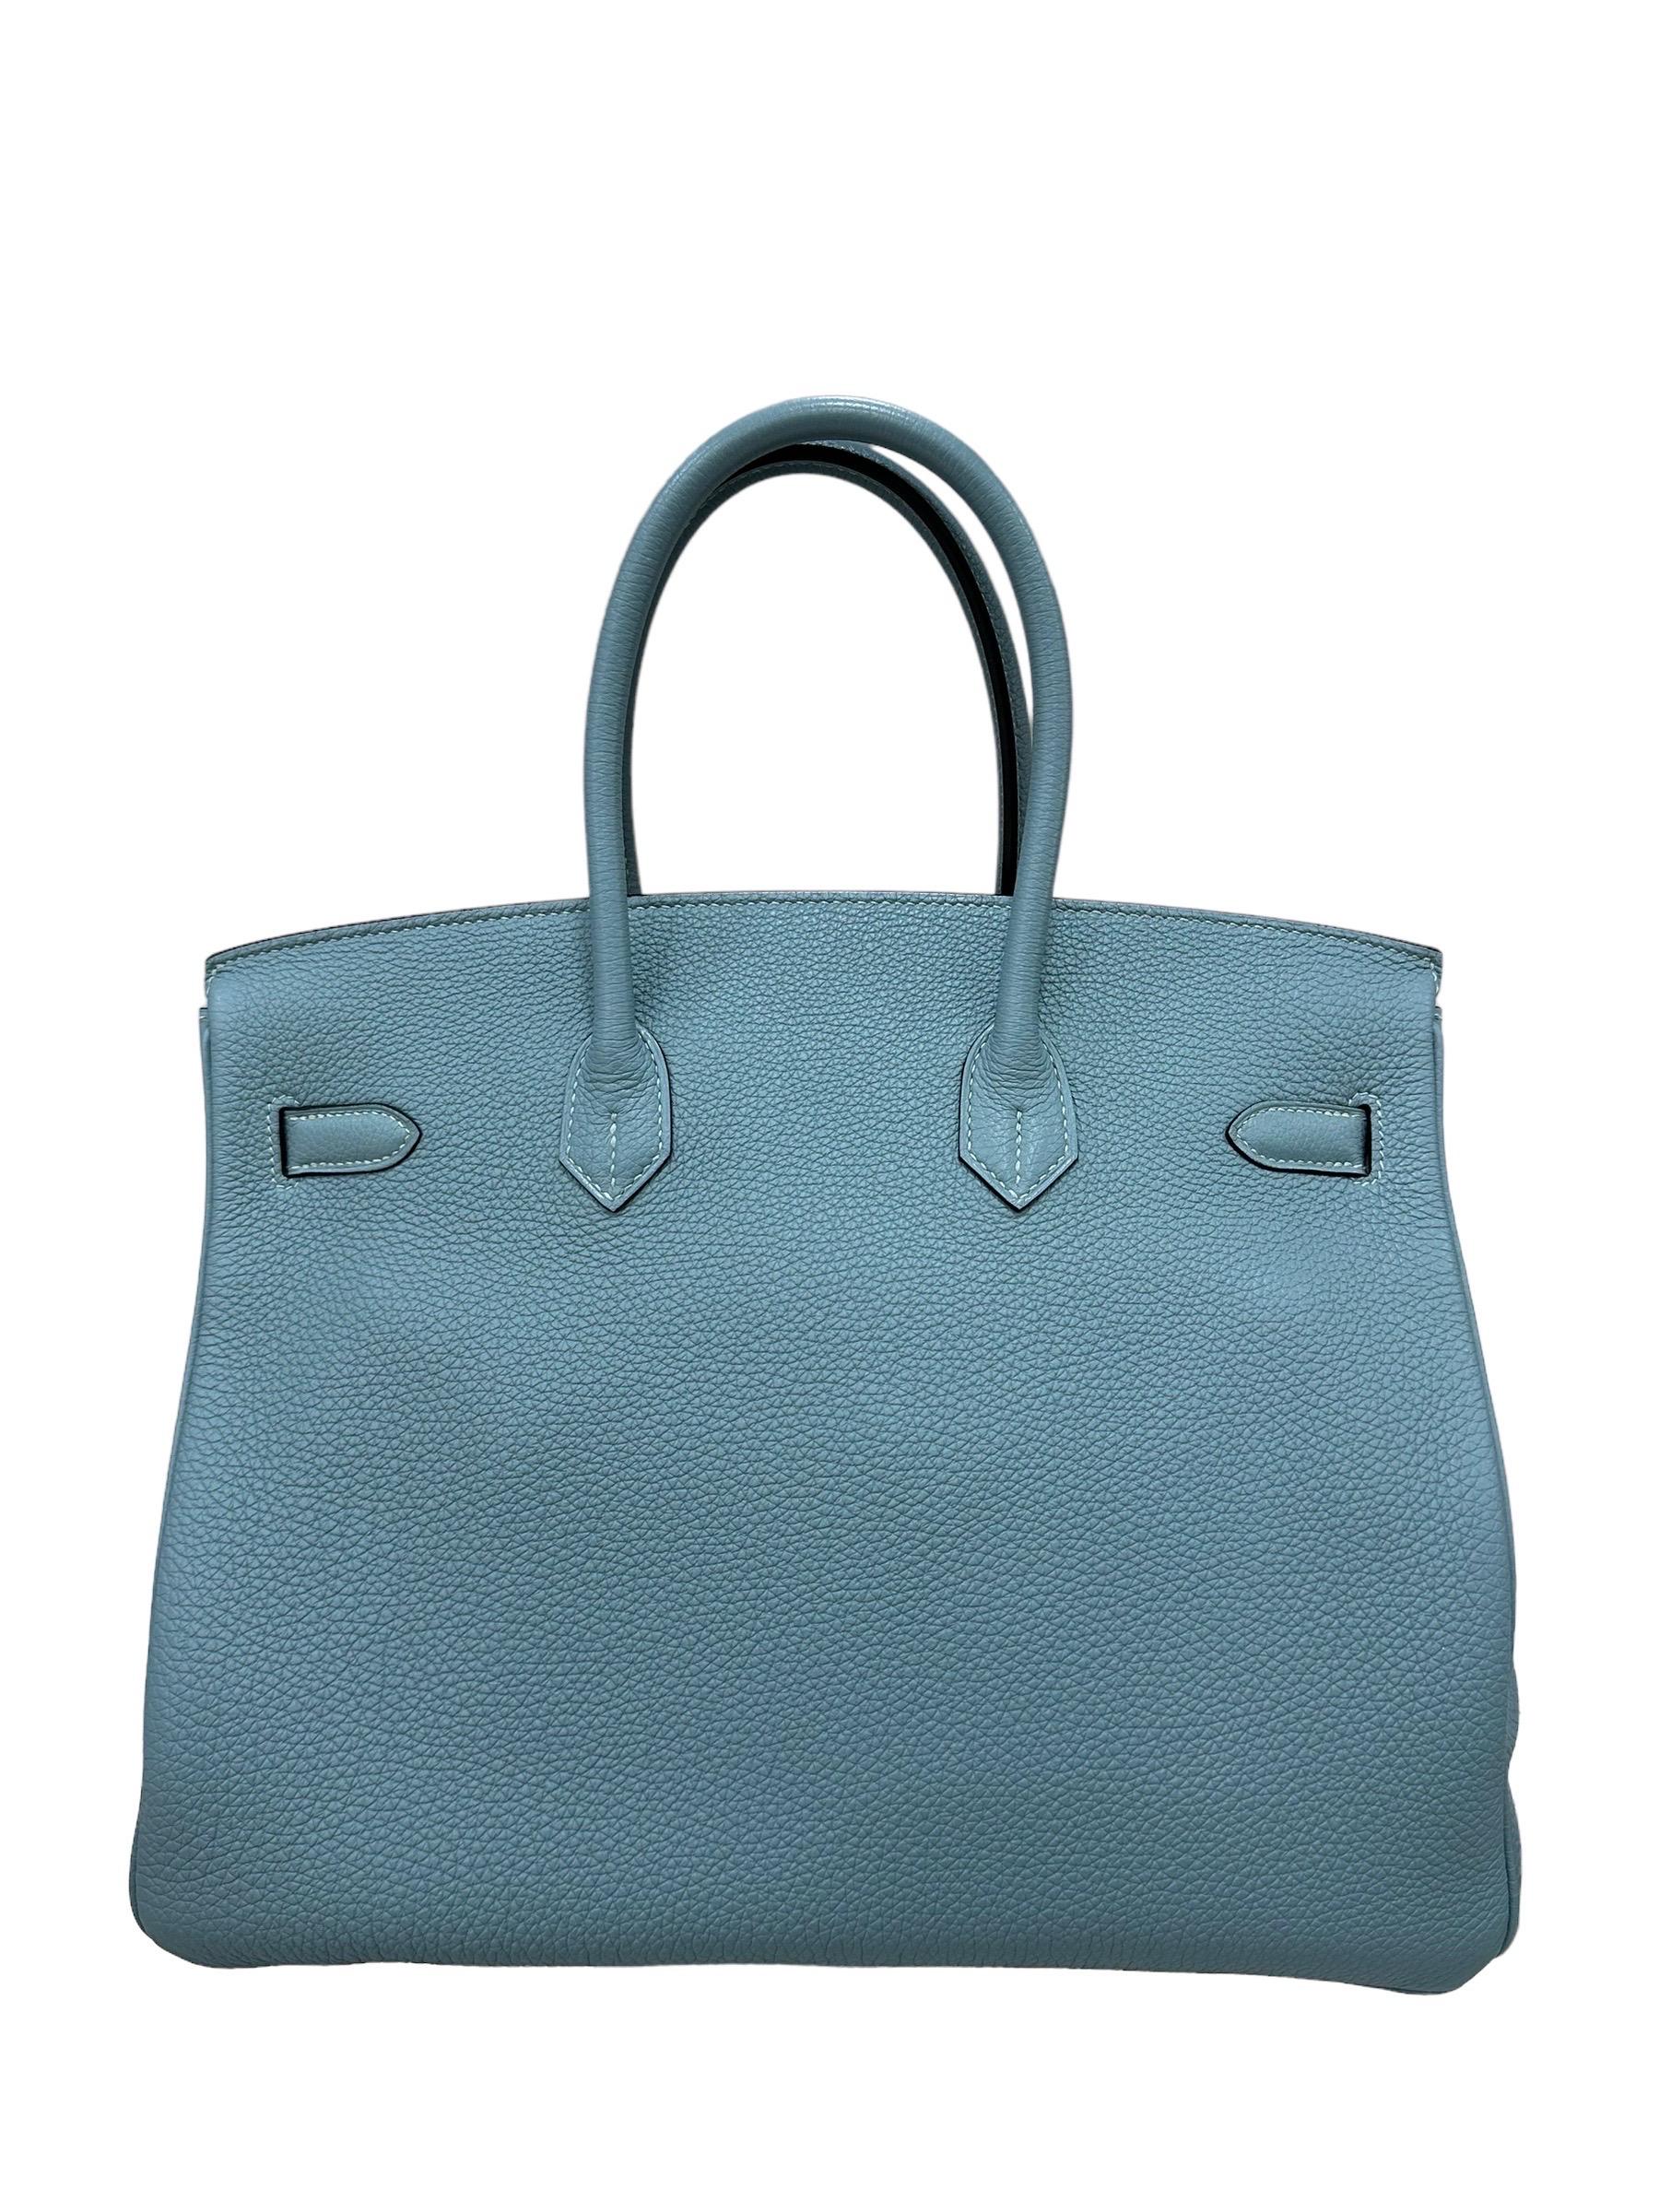 2009 Hermès Birkin 35 Togo Leather Ciel Top Handle Bag For Sale 5